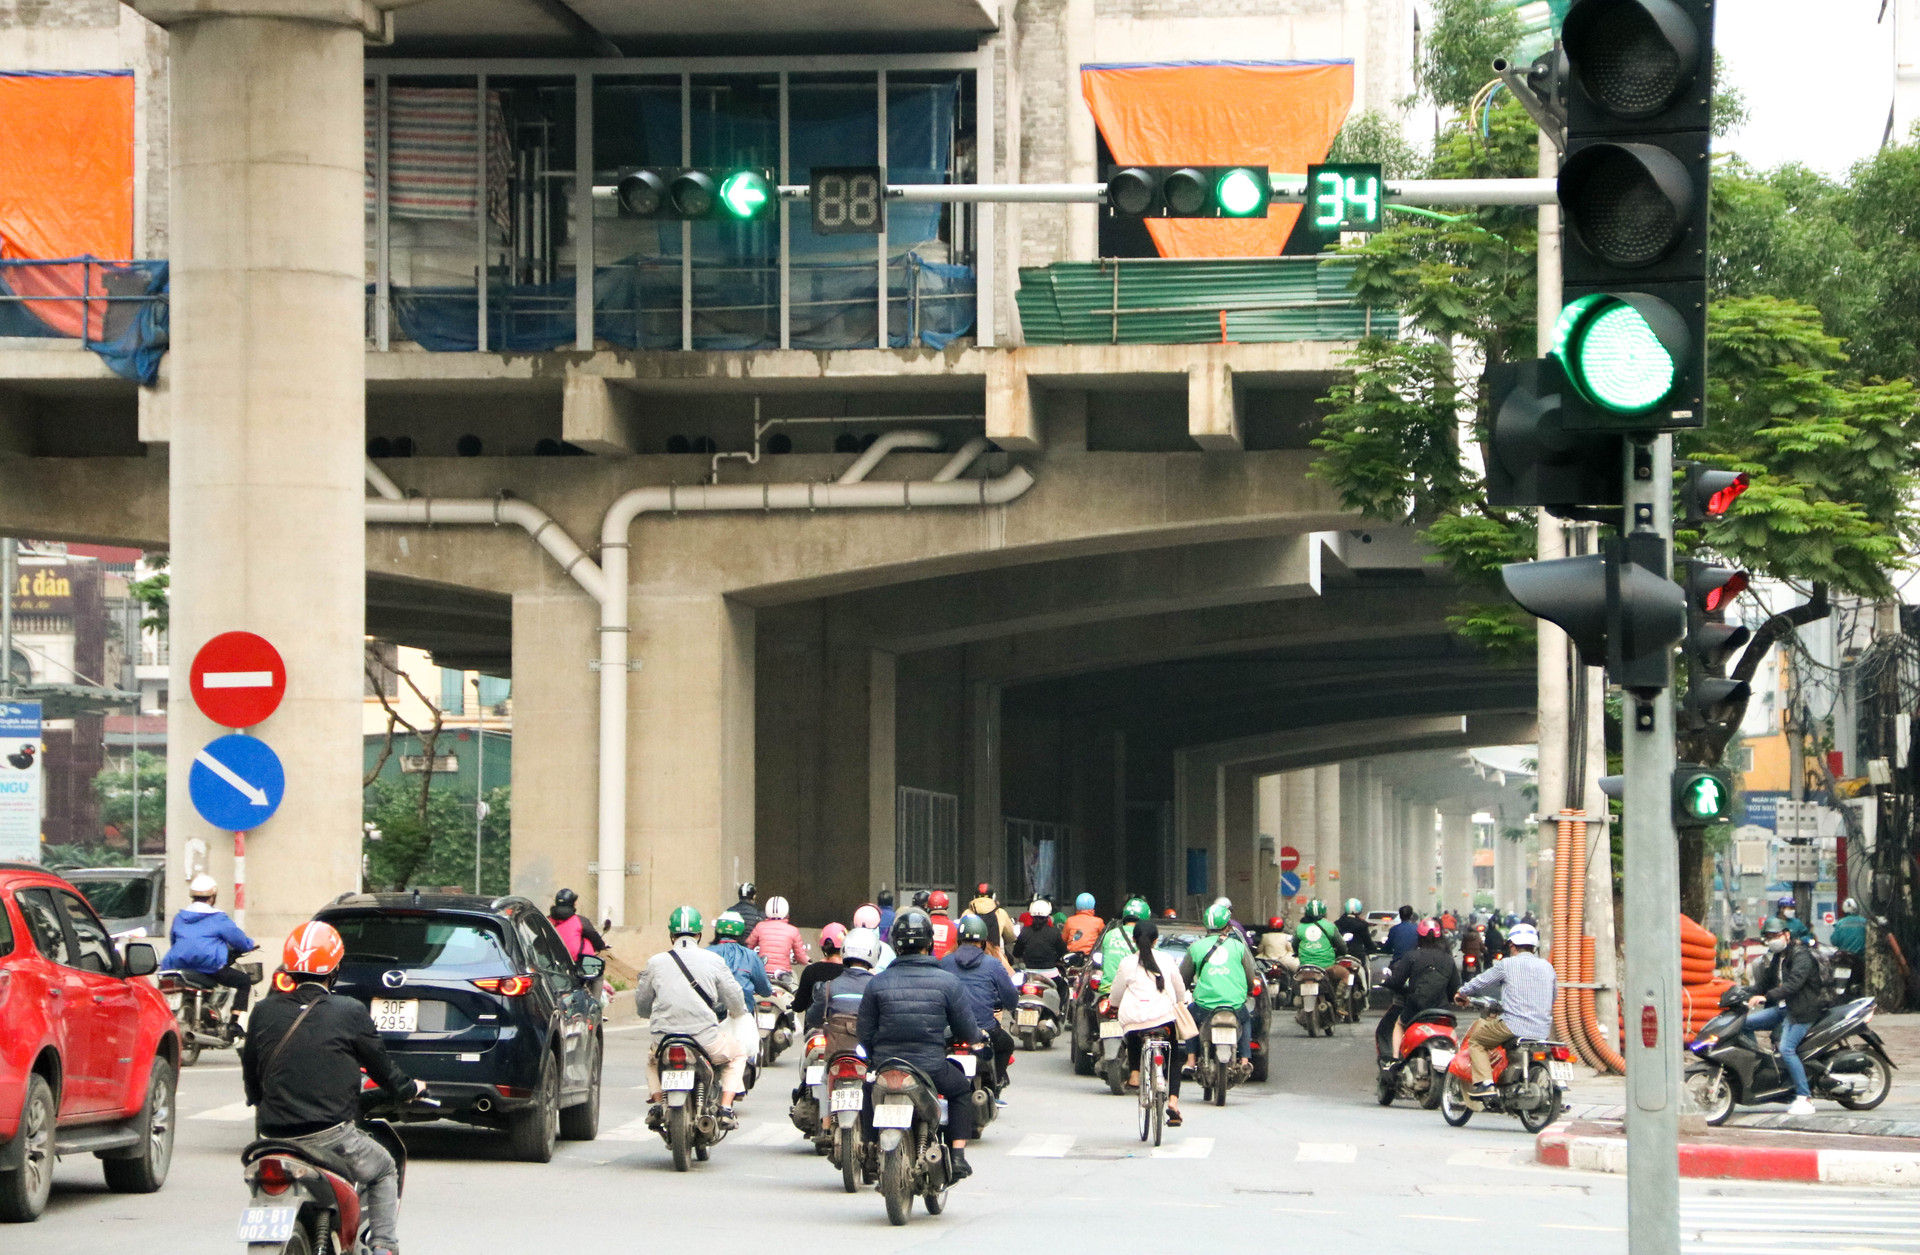 Chùm ảnh: Các tụ điểm công cộng tại Hà Nội dần trở nên đông đúc sau một tuần thực hiện cách ly xã hội - Ảnh 1.